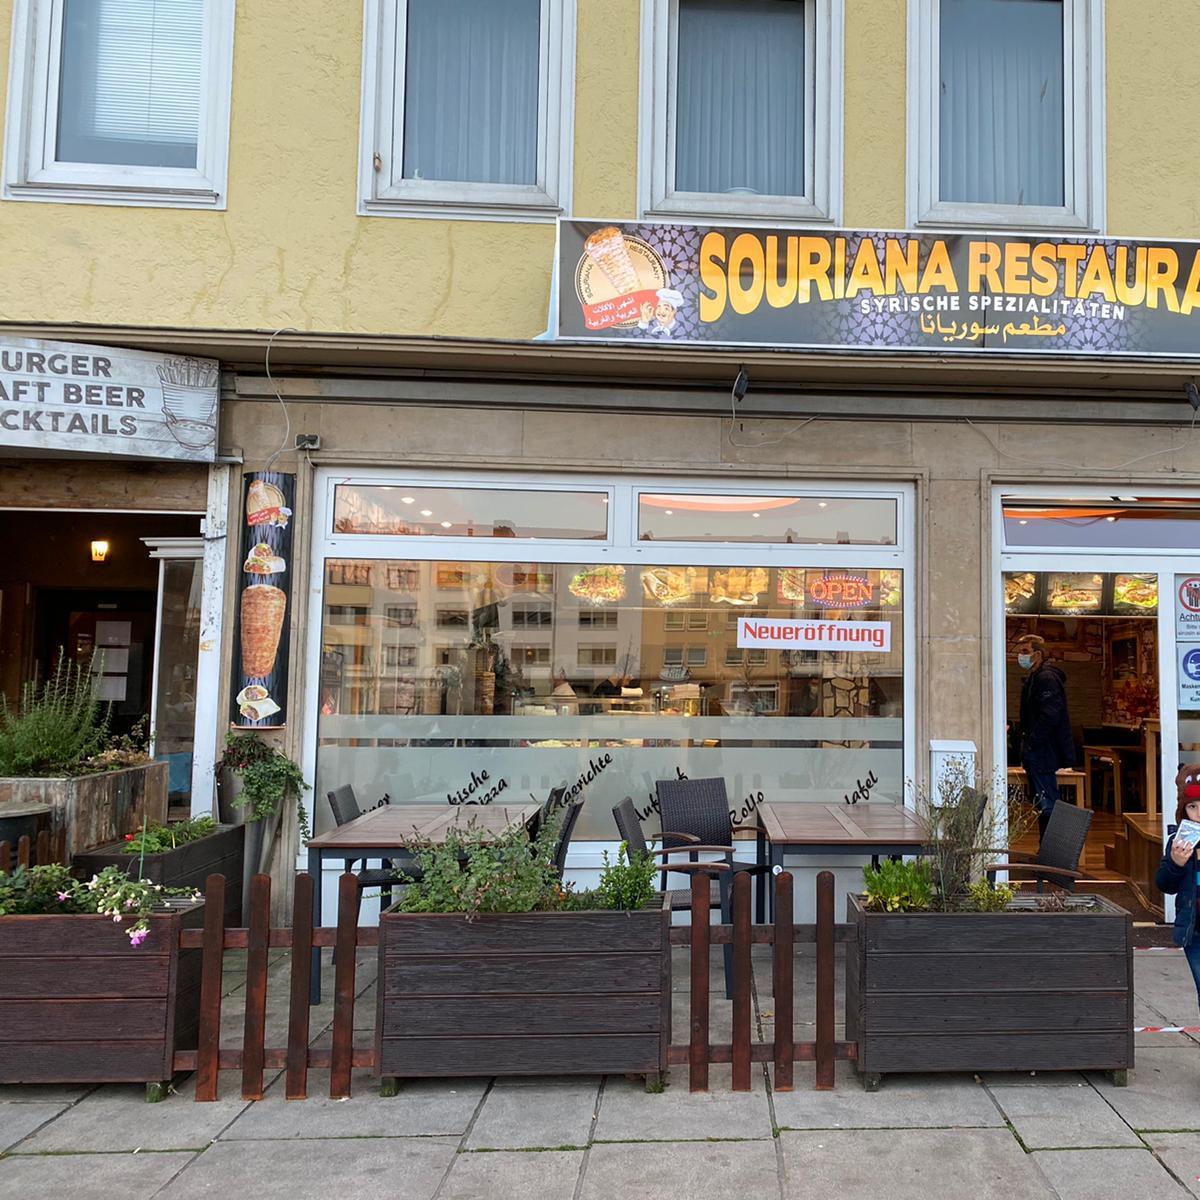 Restaurant "Souriana Restaurant" in Bremerhaven